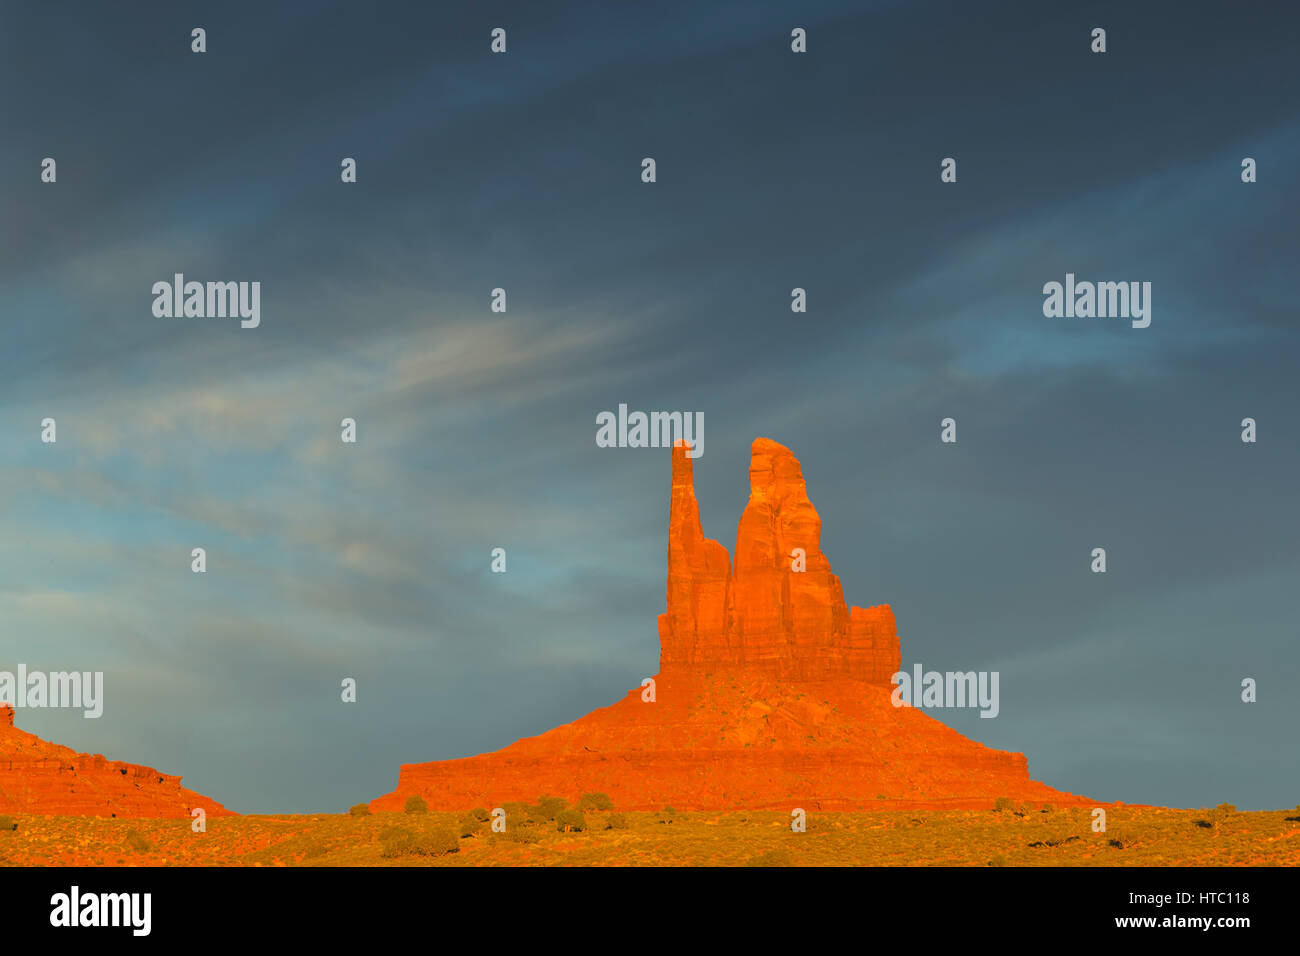 Le roi sur son trône rock formation, Monument Valley Navajo Tribal Park, Utah, USA Banque D'Images